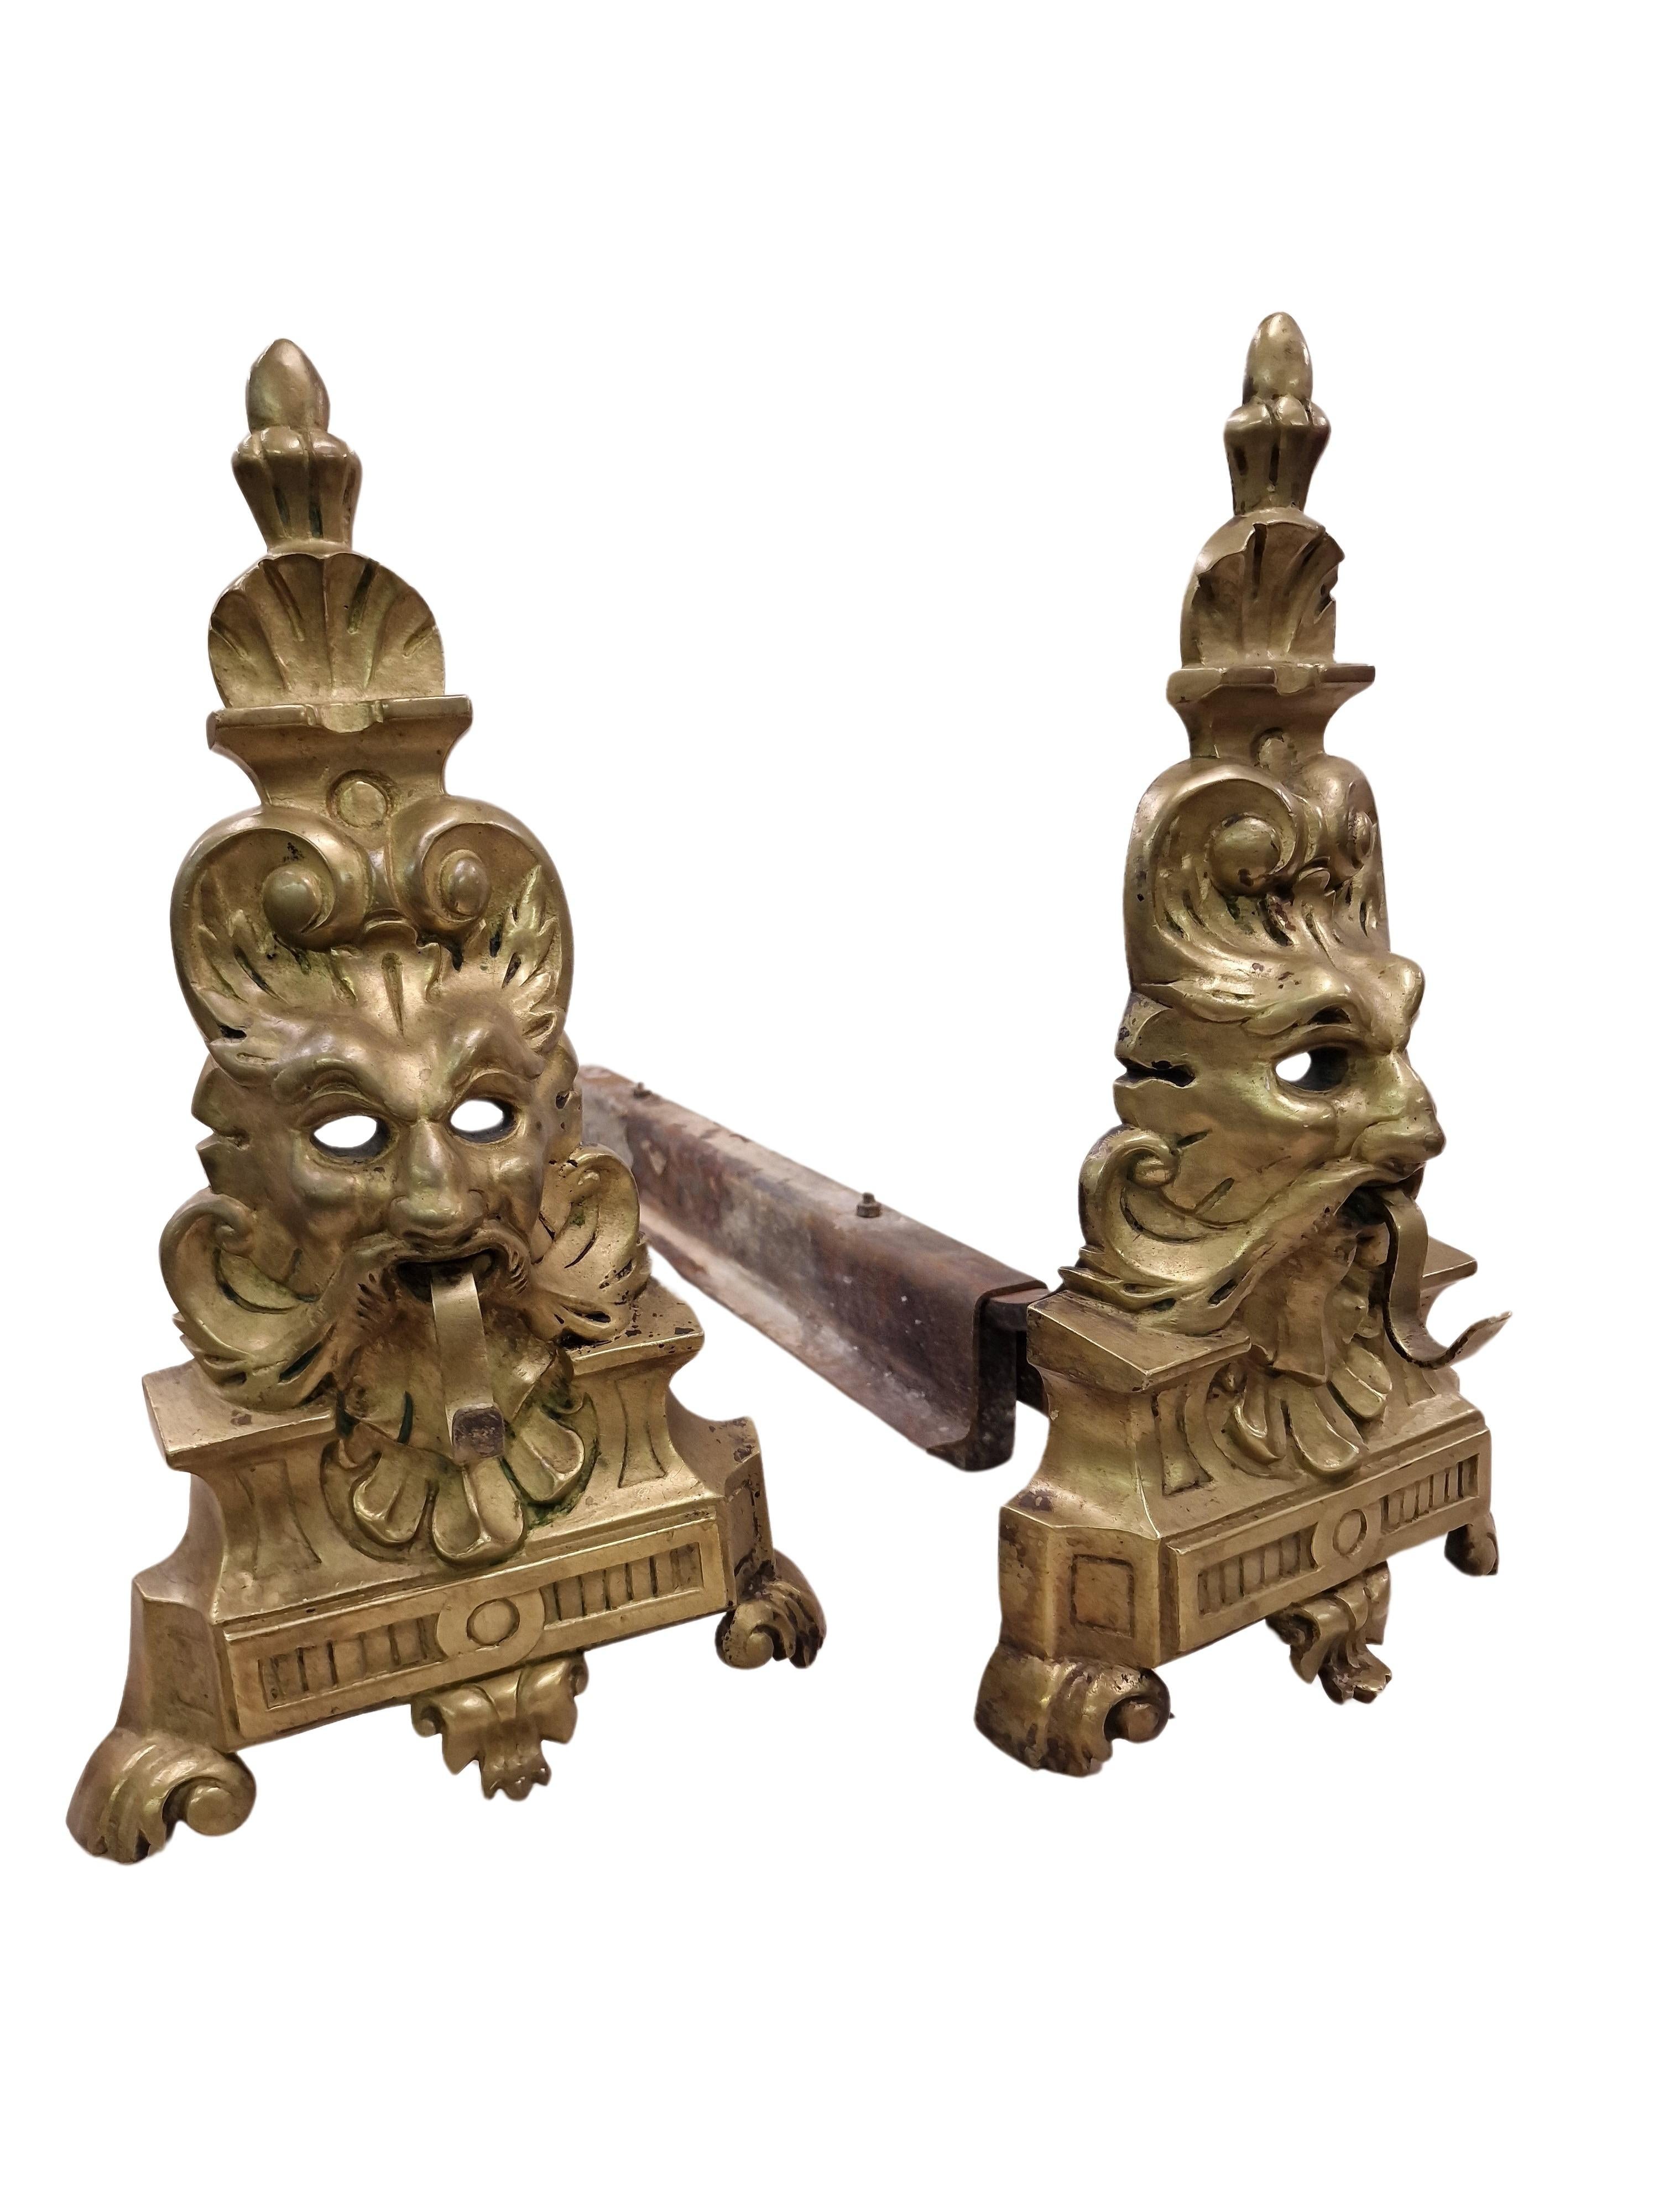 Wunderschönes Paar von Kaminfiguren, besonders seltenes Design, hergestellt in Frankreich in der zweiten Hälfte des 19. Jahrhunderts, um 1870.

Die Hilfsmittel zum stilvollen Heizen werden neben oder vor der Feuerstelle platziert, um das Holz zum